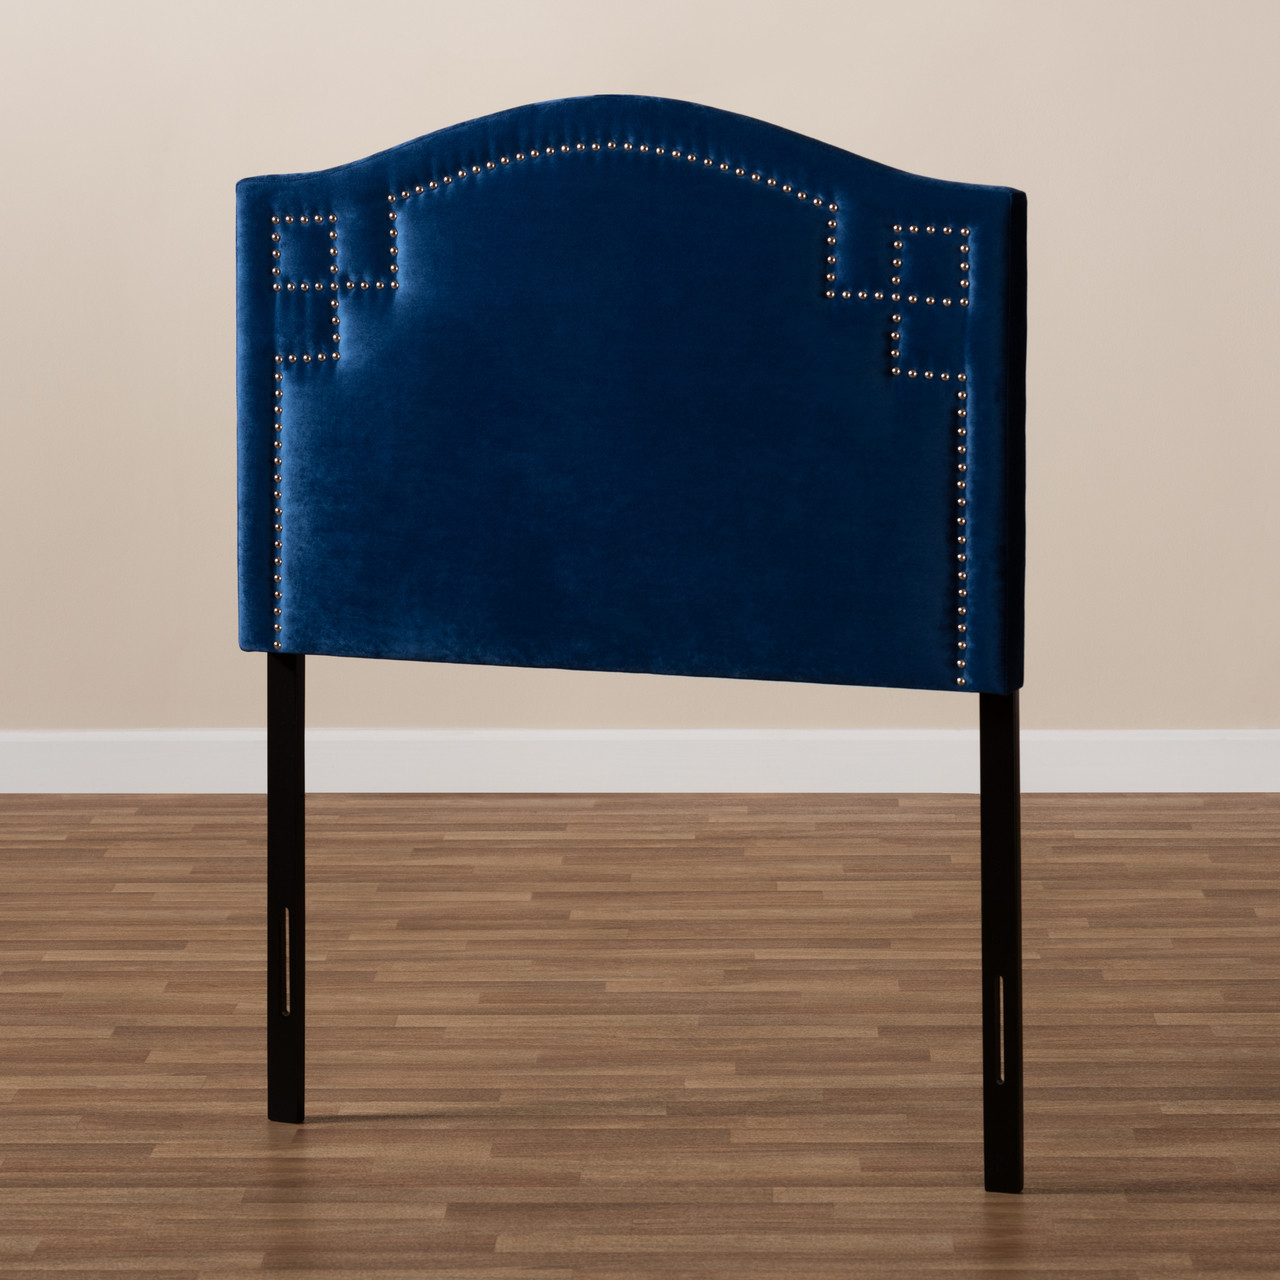 Gothic Inspired Royal Blue Velvet Single Sofa - Bed Bath & Beyond - 14426740